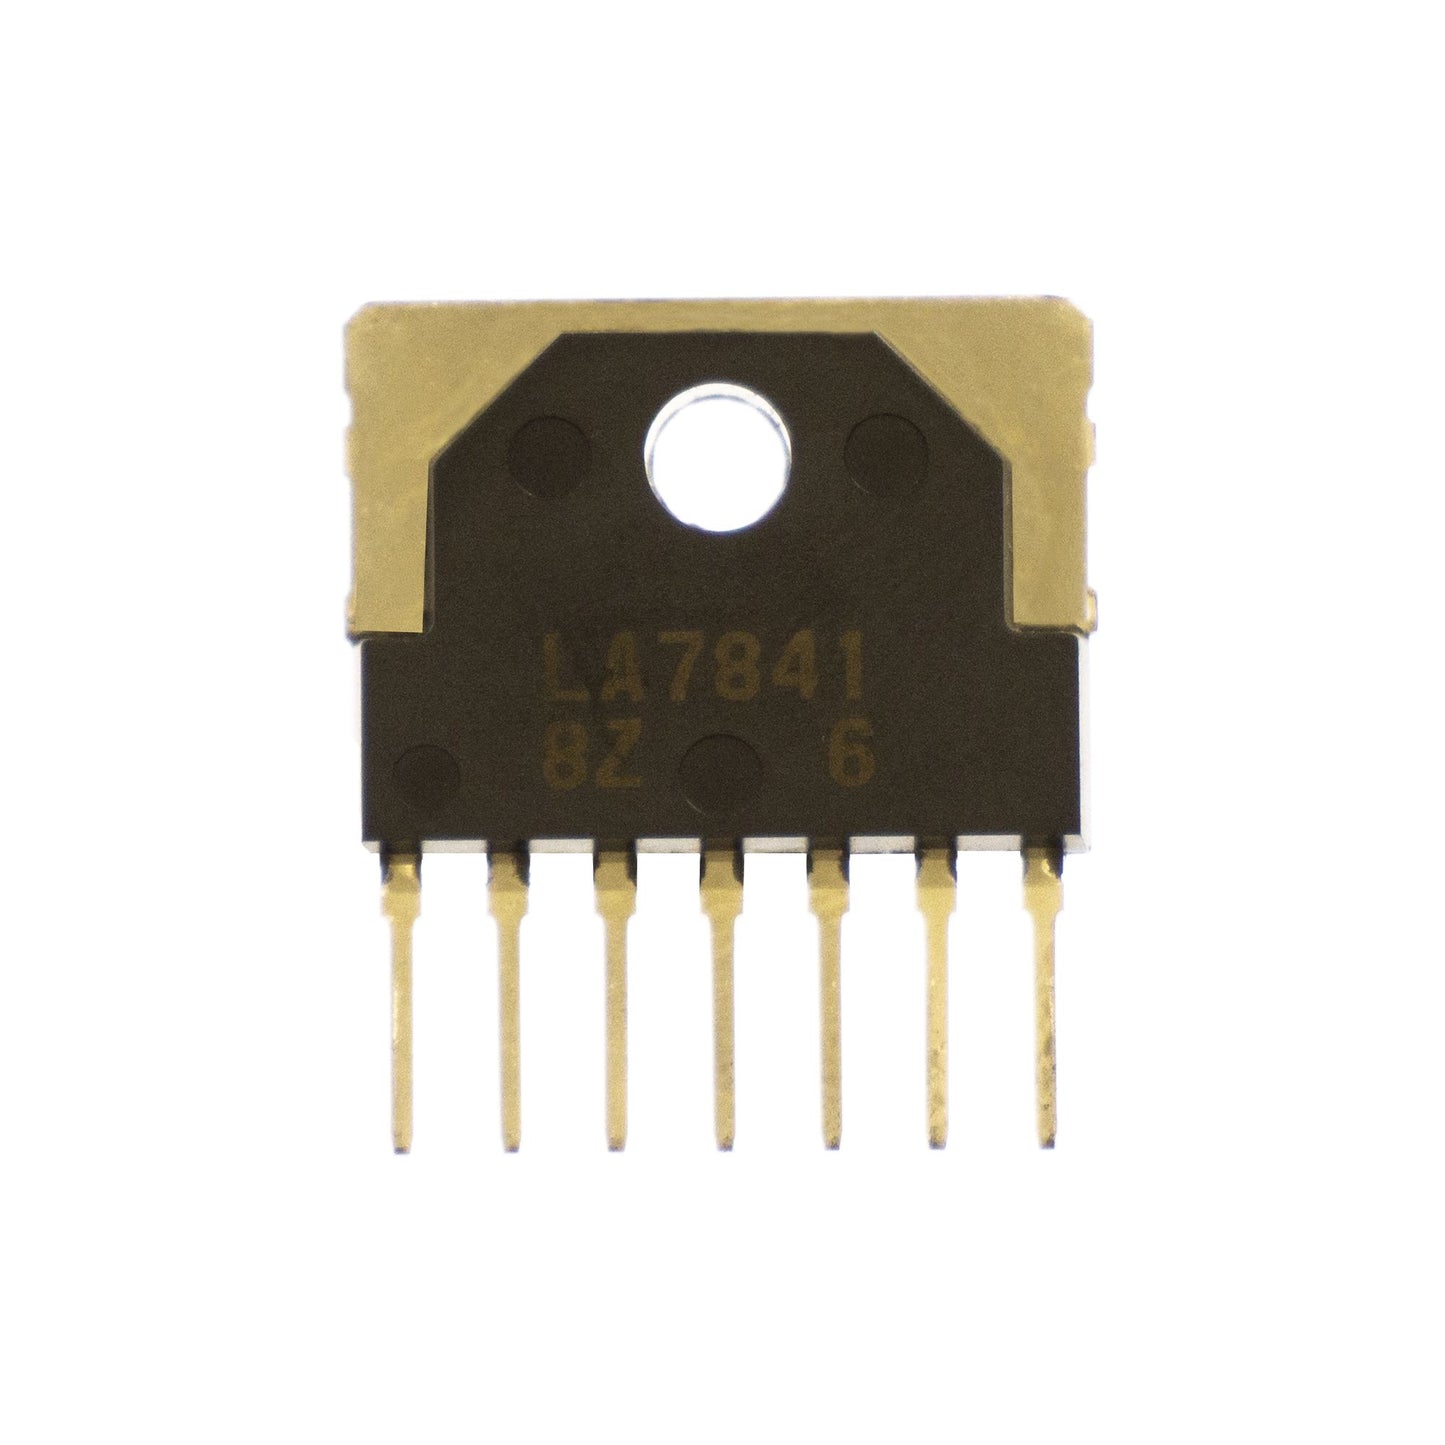 LA7841 componente elettronico, circuito integrato, transistor, 7 contatti